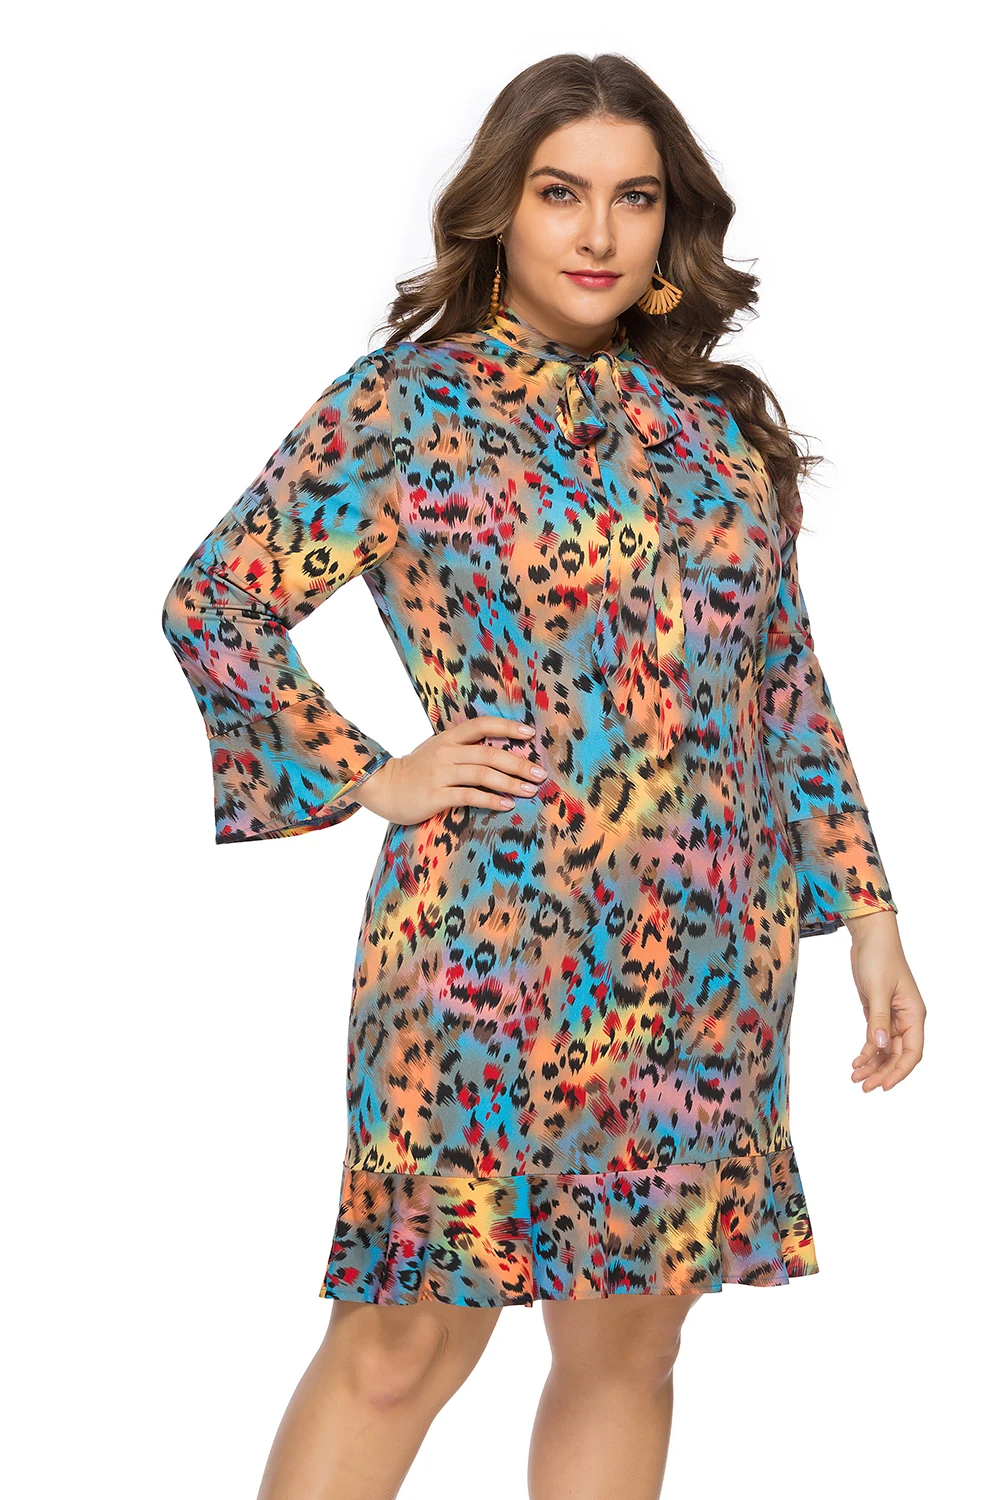 DUOUPA весной и летом в Европе и большой Размеры Для женщин v-образным вырезом лук Leopard Ruffled платье миди SQ0118